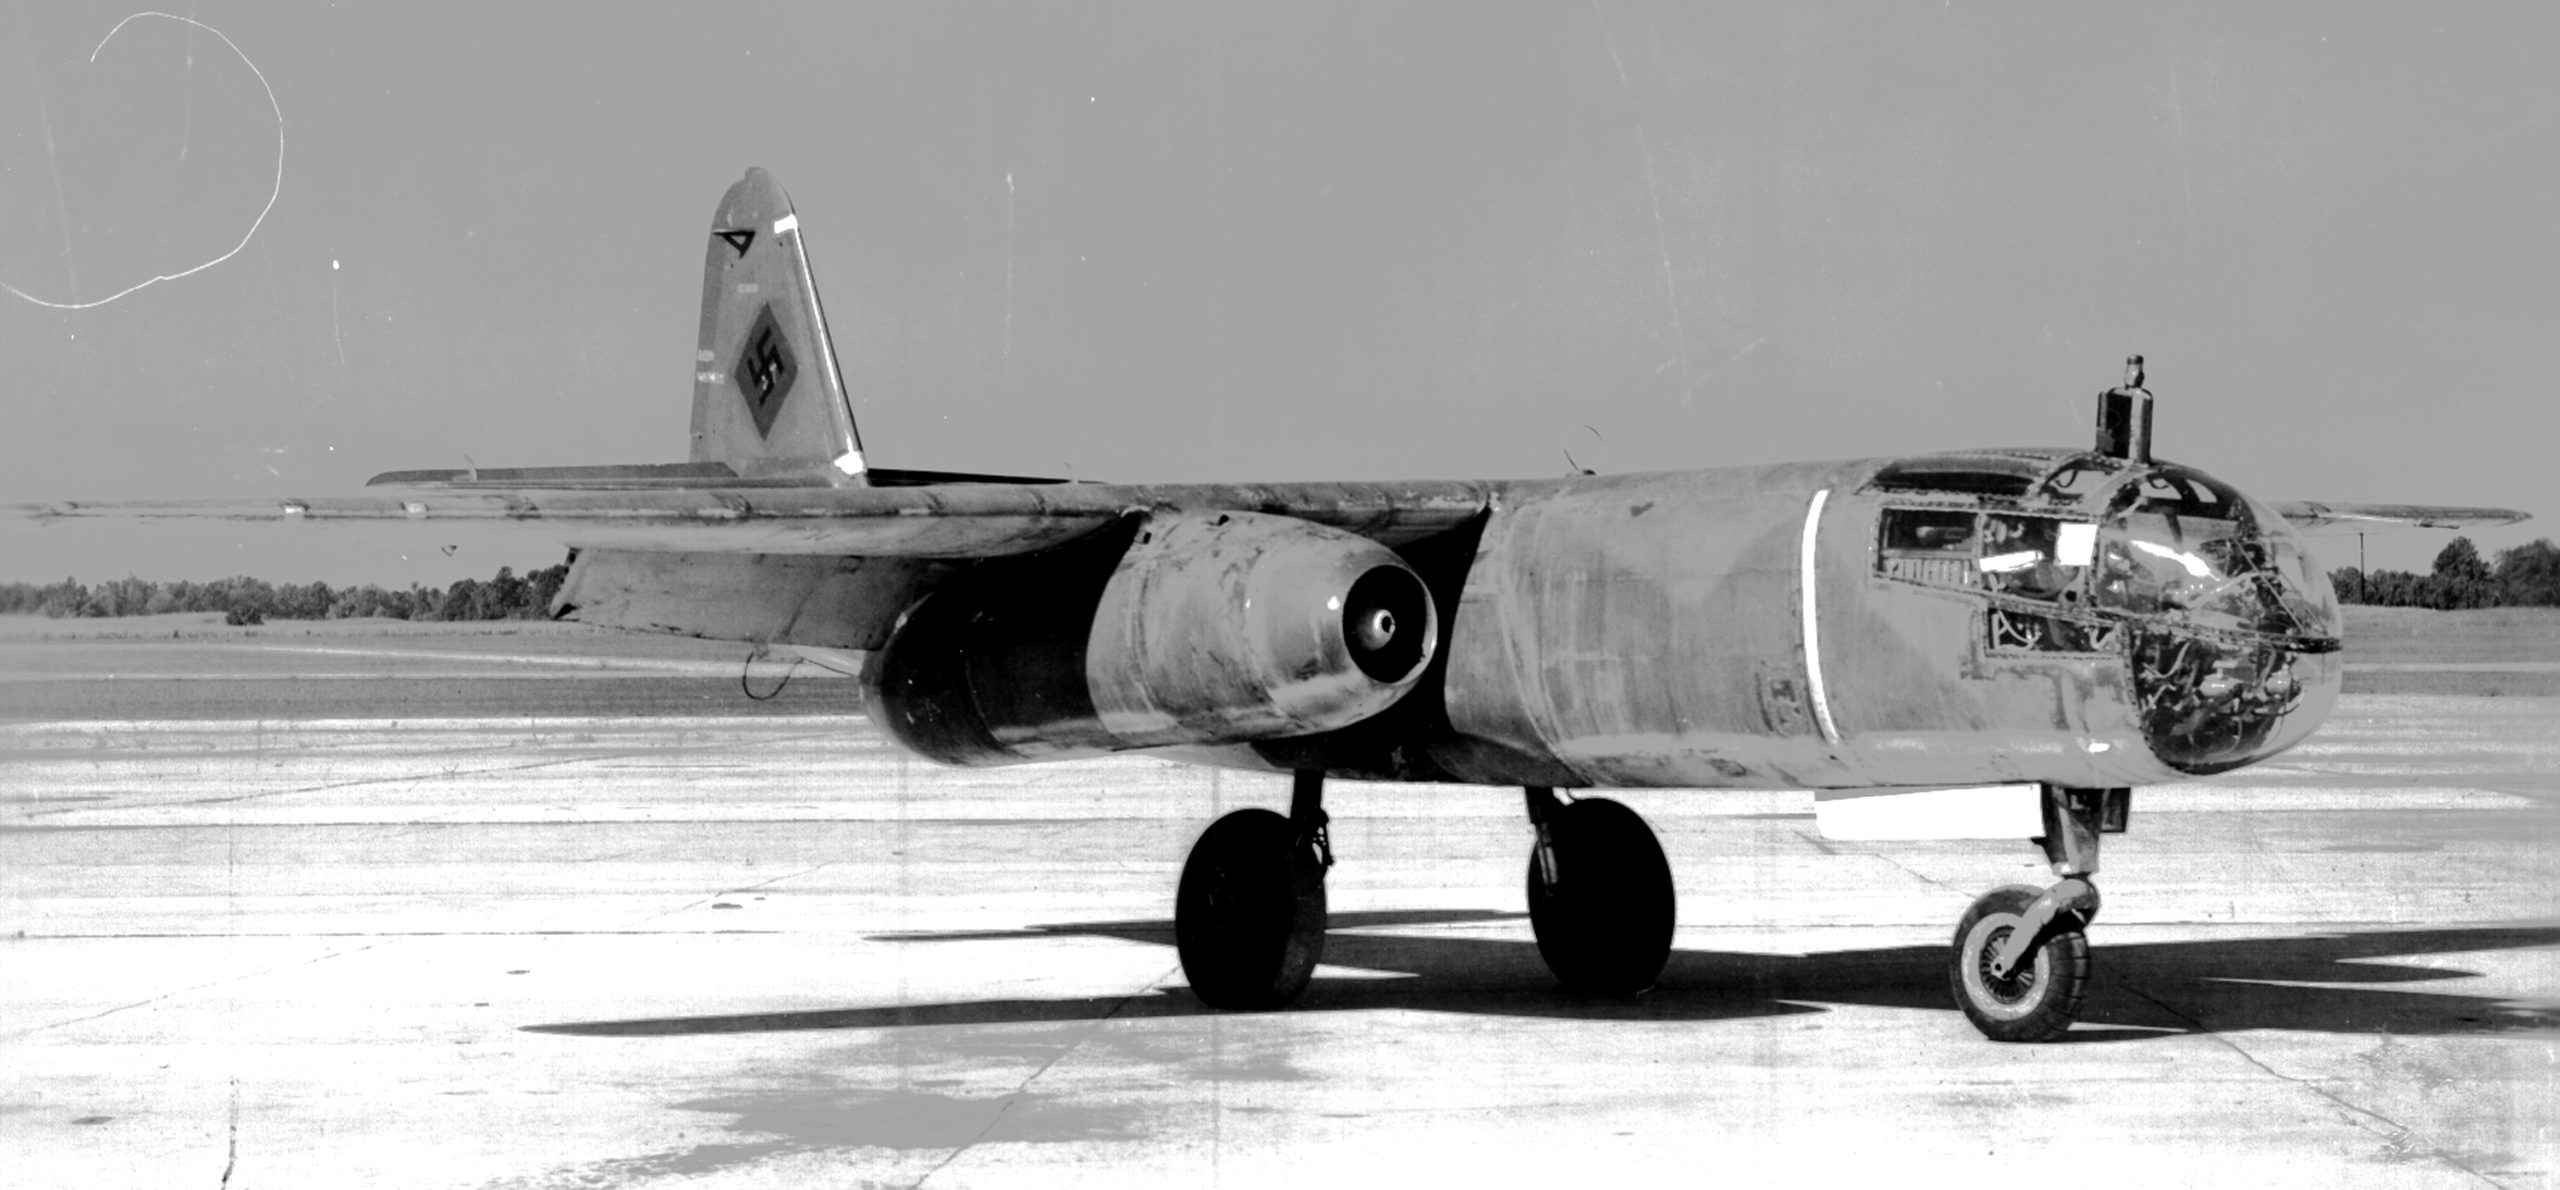 Ar 234: Σπάνιο υλικό από το πρώτο αεριωθούμενο βομβαρδιστικό στον κόσμο